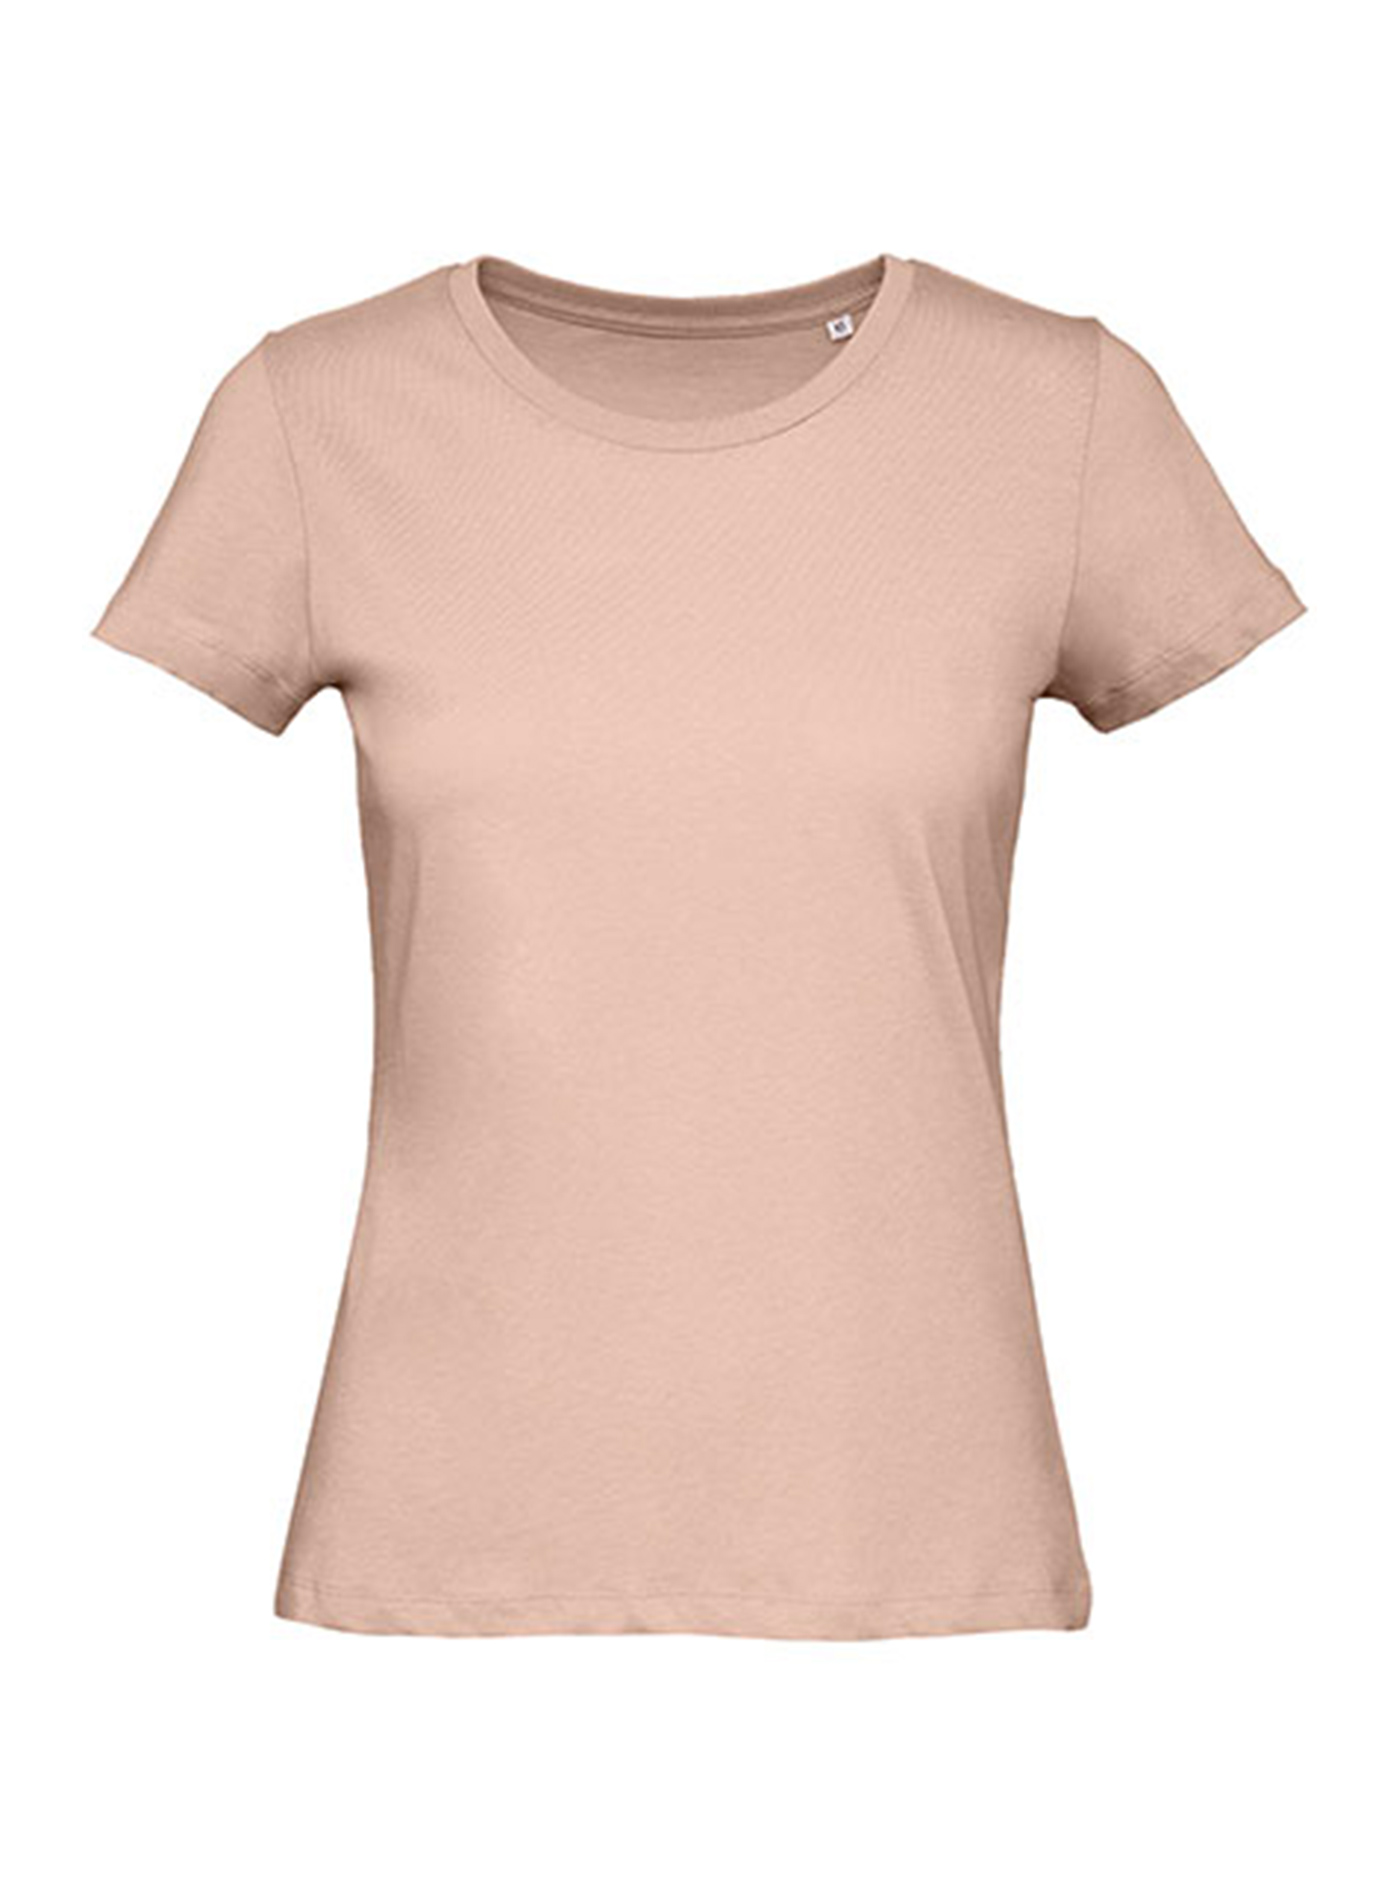 Dámské tričko B&C Collection Inspire - Bledě růžová S